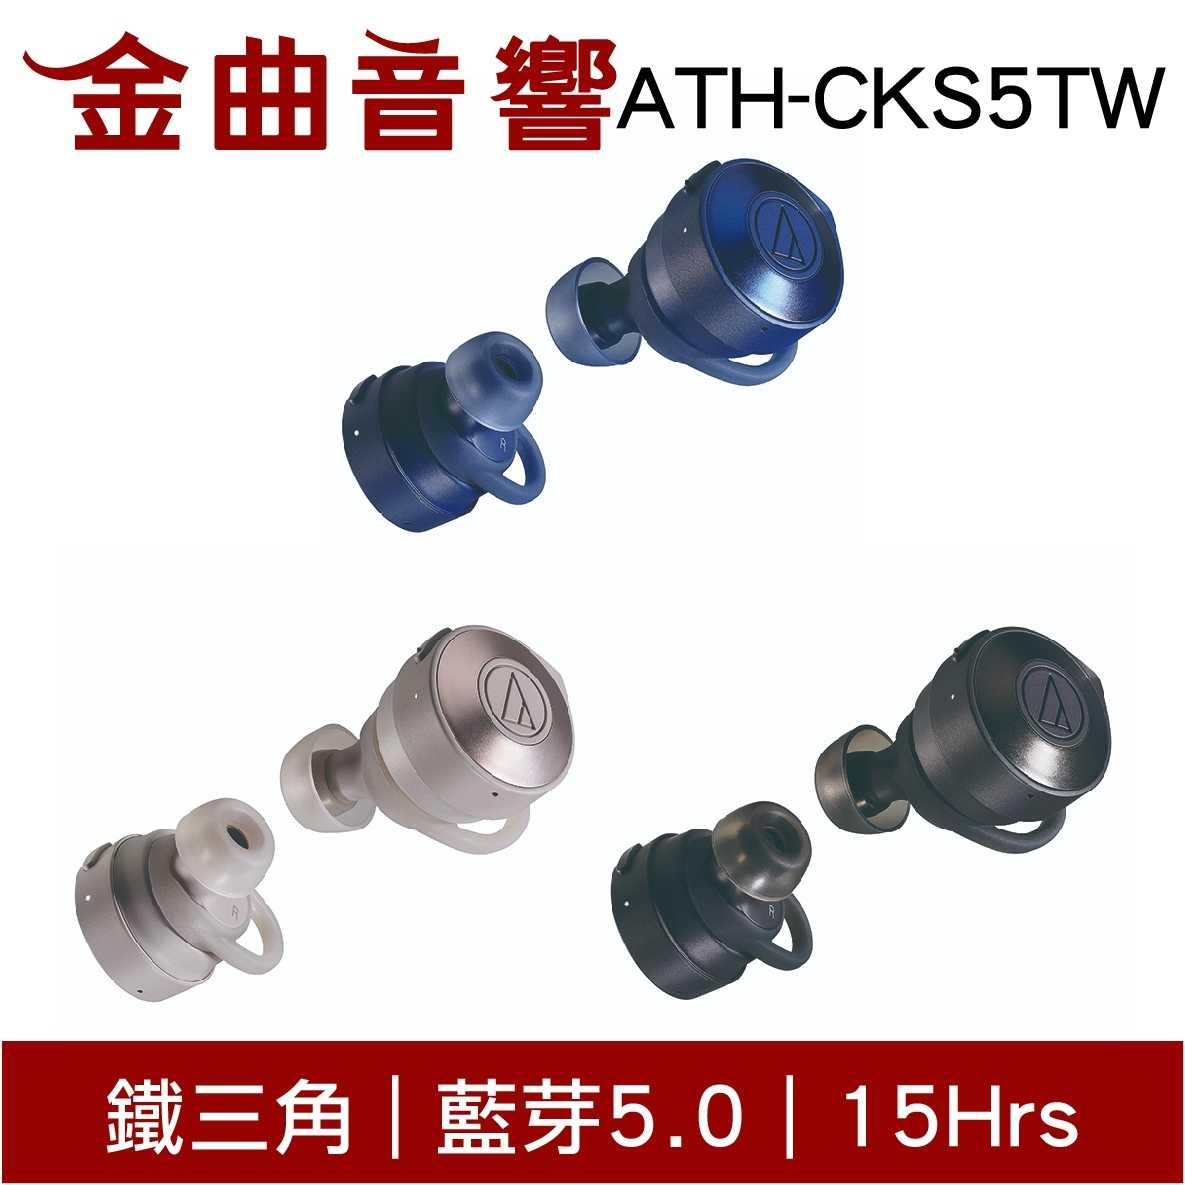 鐵三角 ATH-CKS5TW 三色可選 真無線 藍芽耳機 | 金曲音響